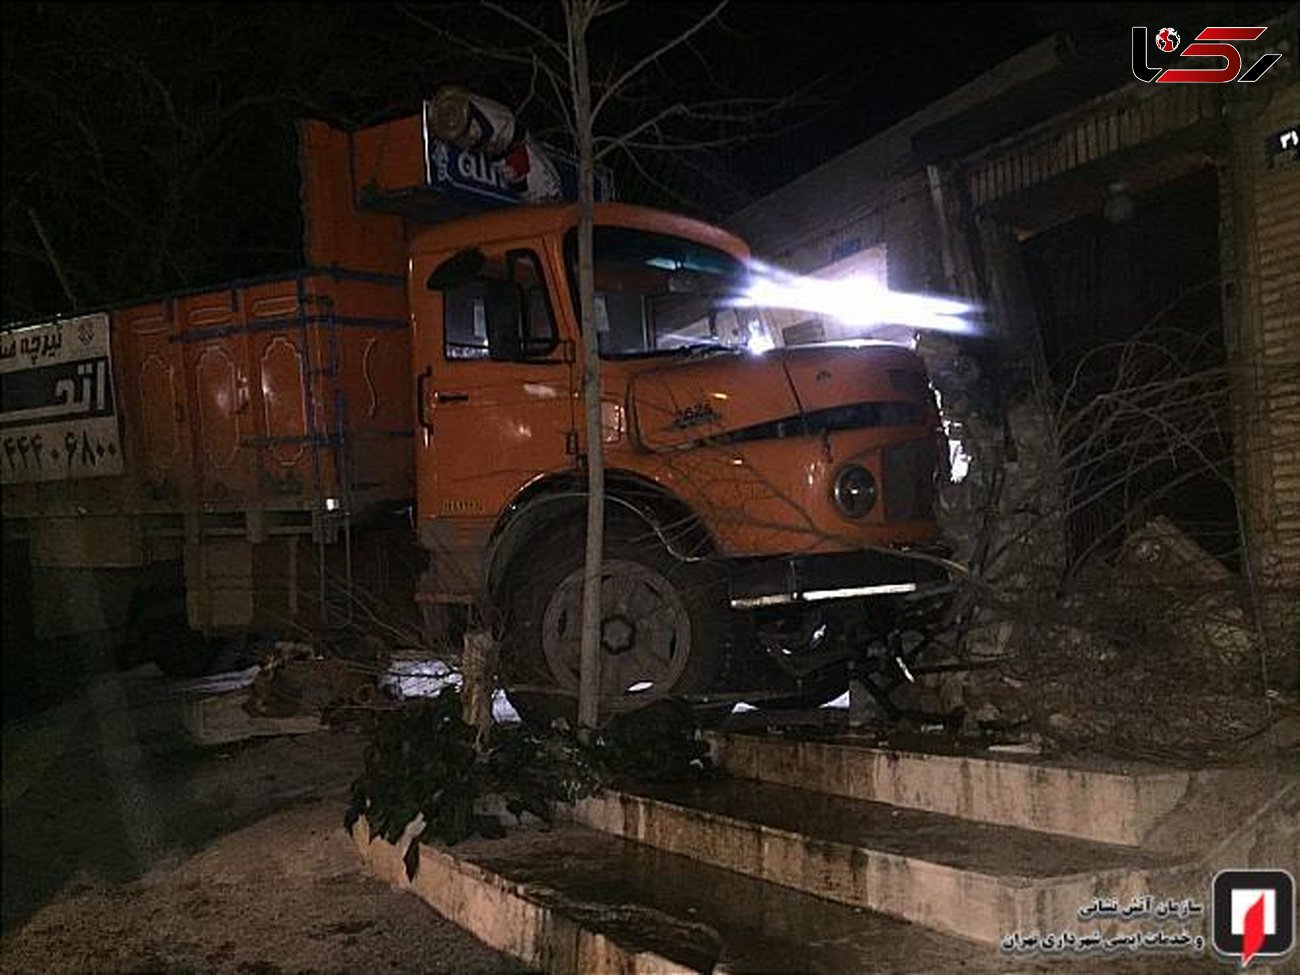 کامیون نارنجی آرامش محله کاشانک را به هم ریخت + عکس 